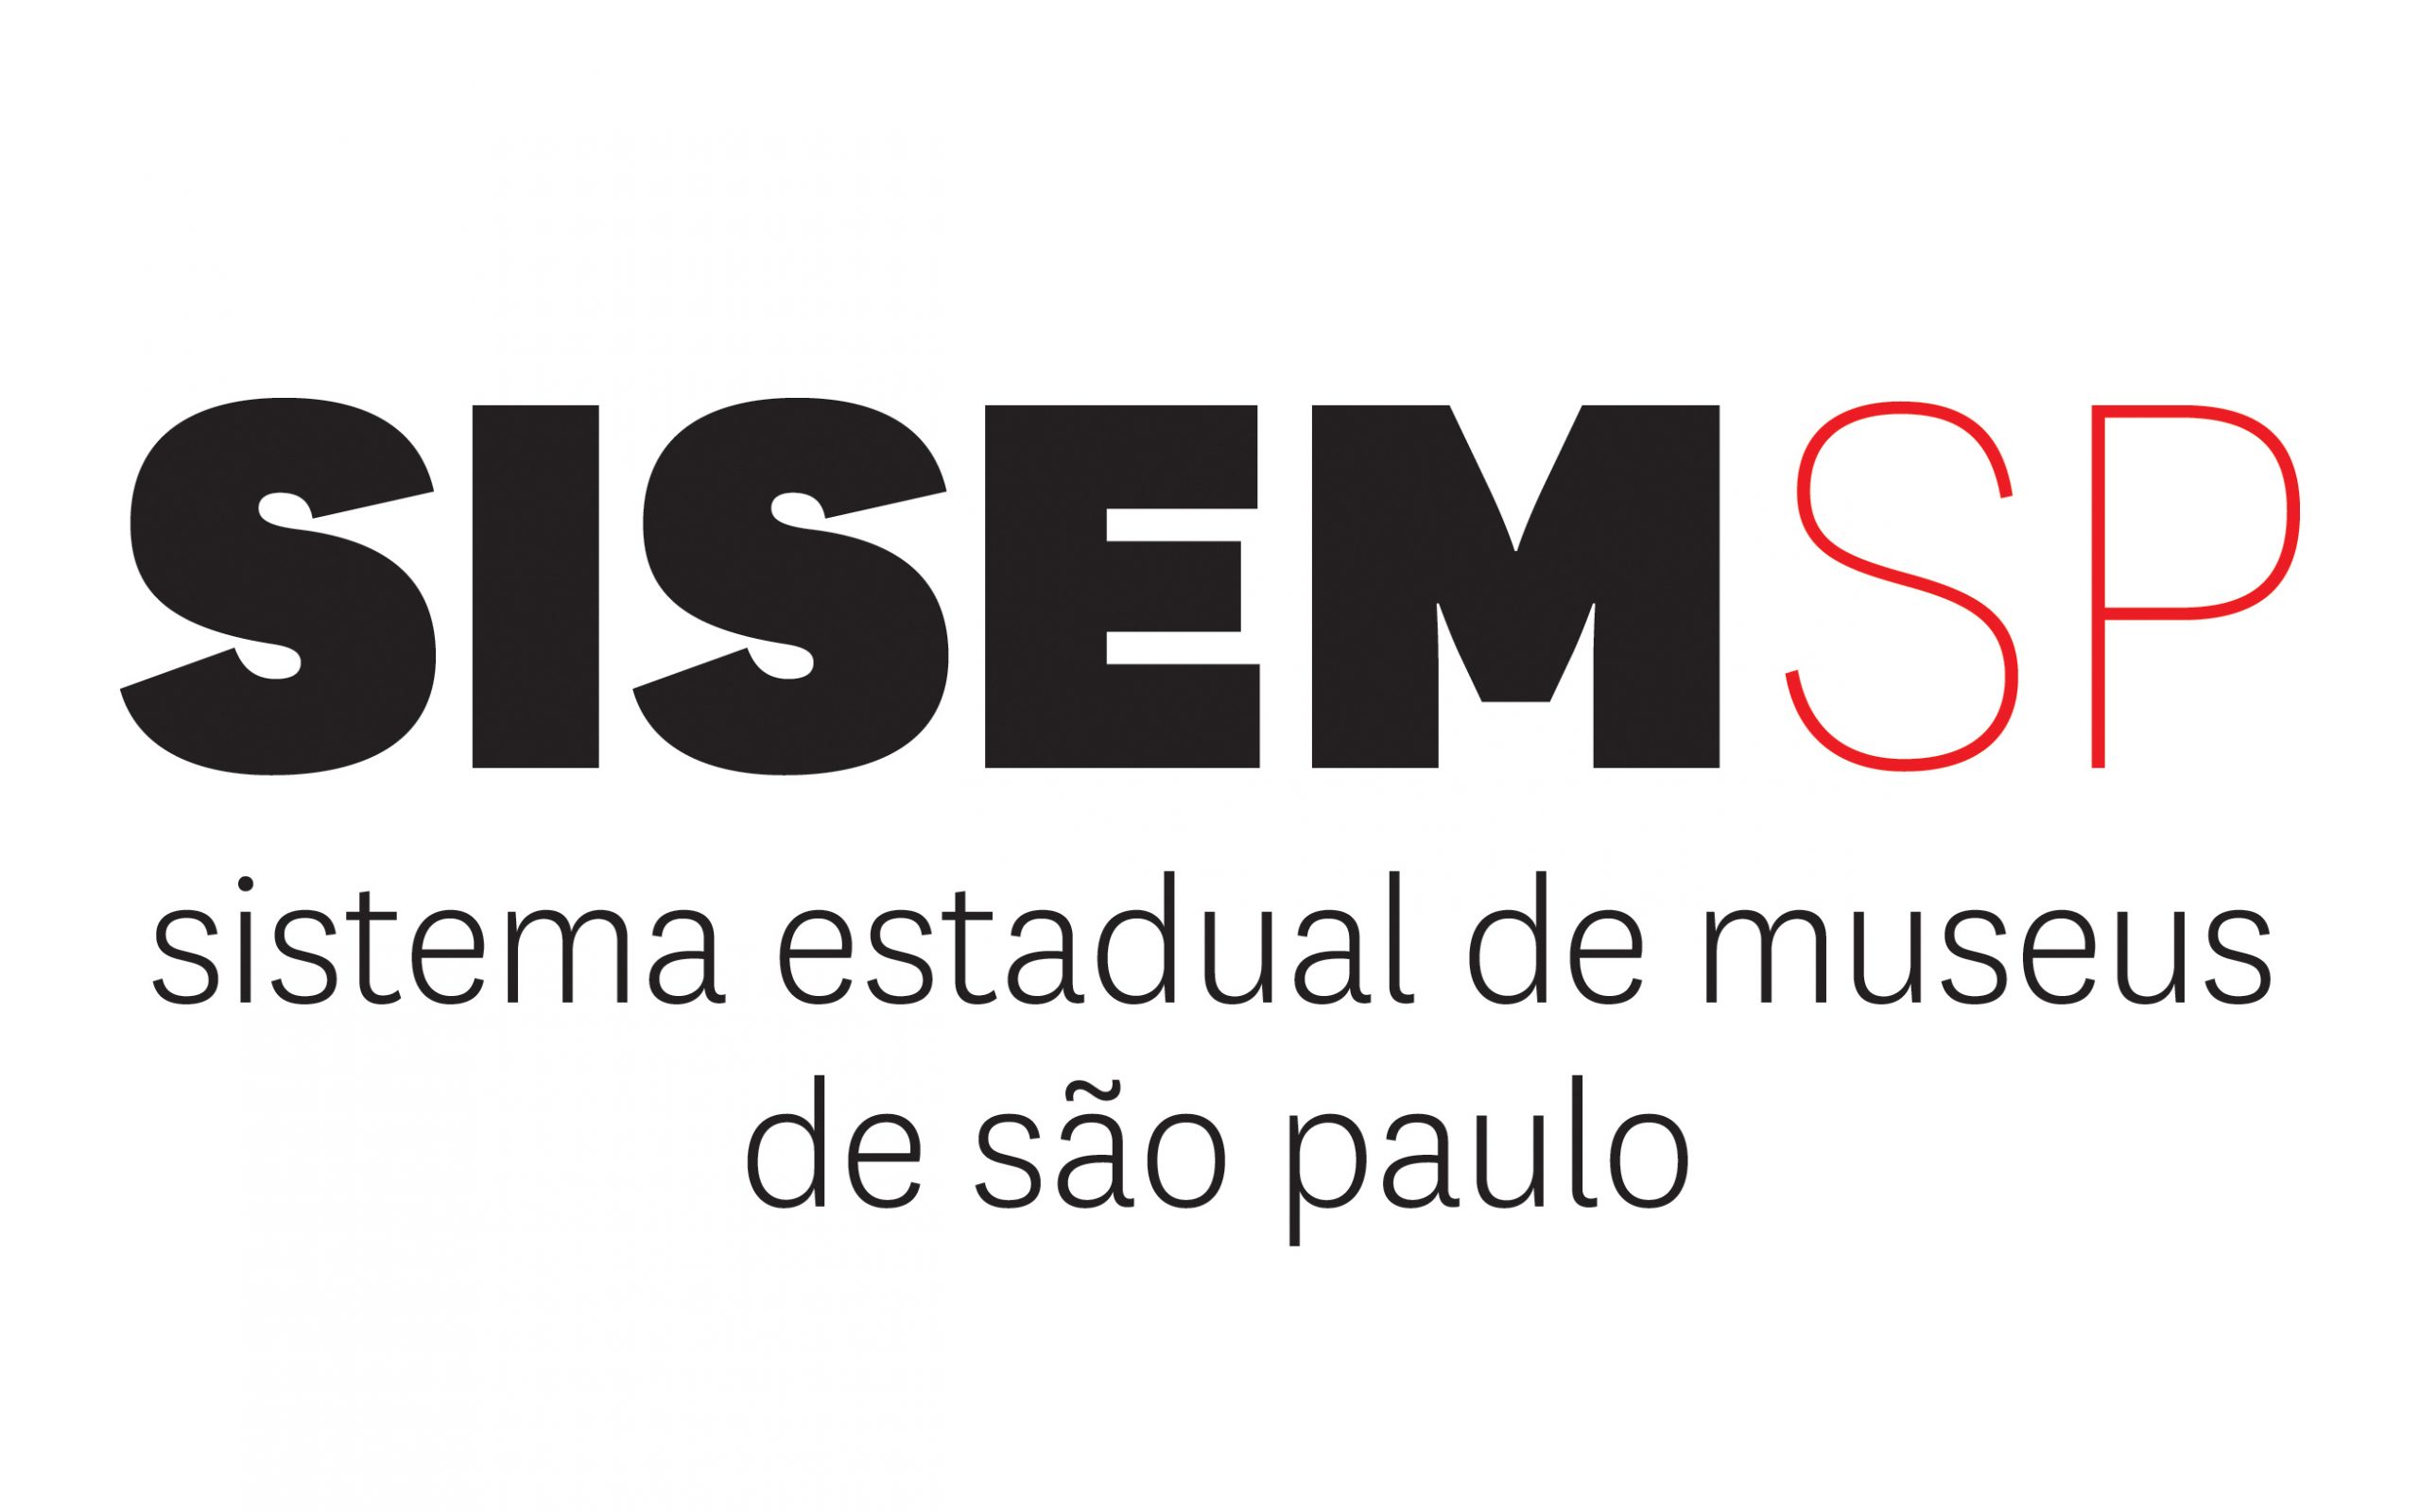 Sisem-SP realiza webinário sobre sustentabilidade cultural em museus